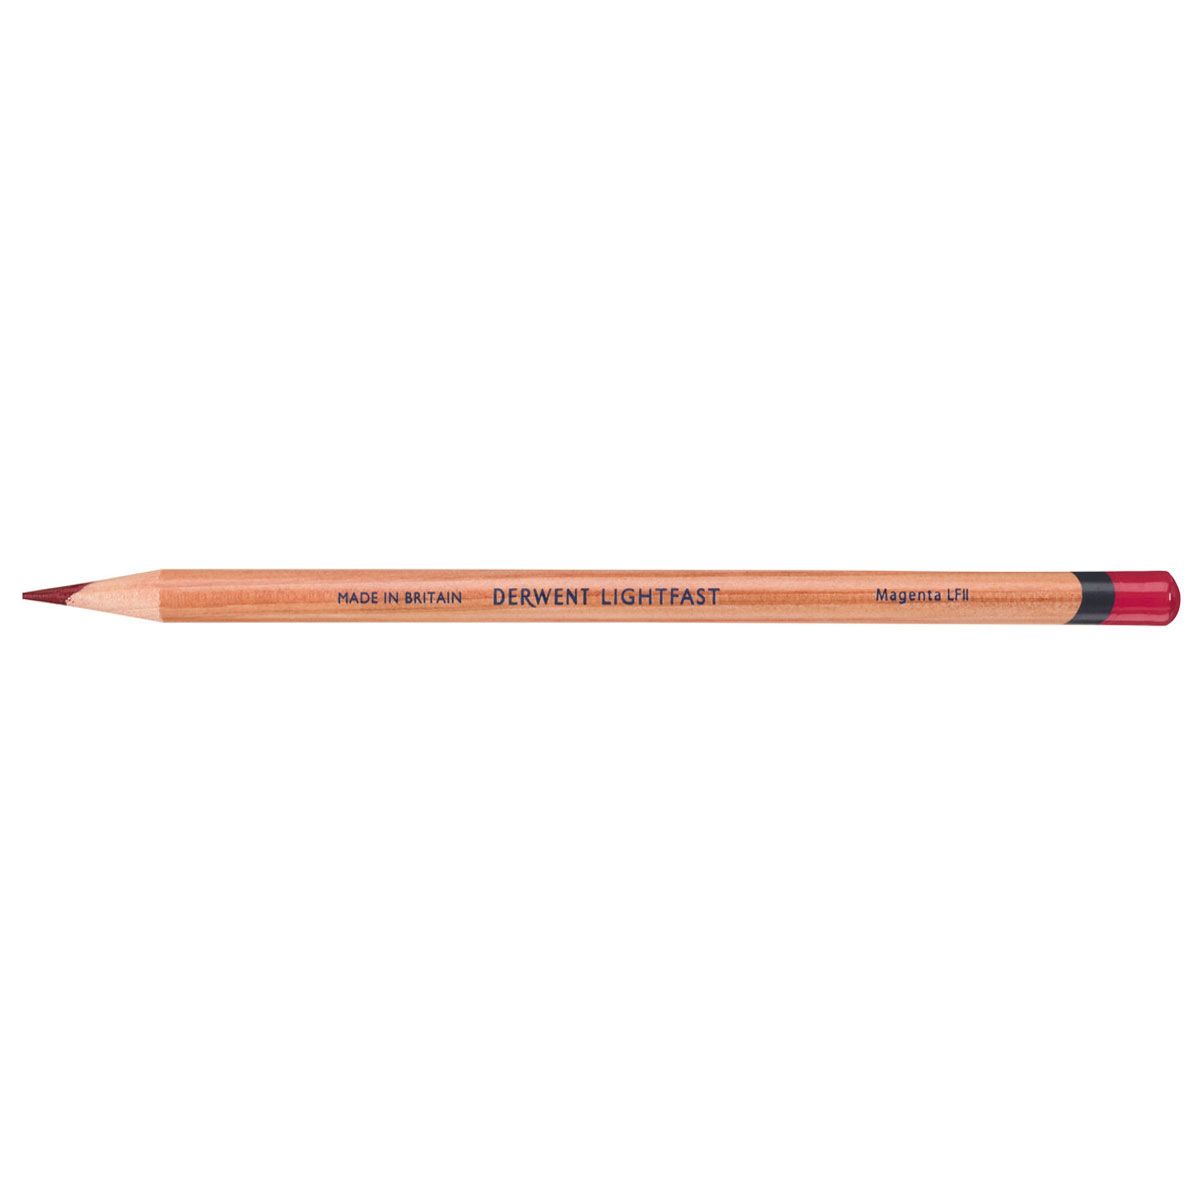 NEW Derwent Lightfast Pencil Colour: Magenta